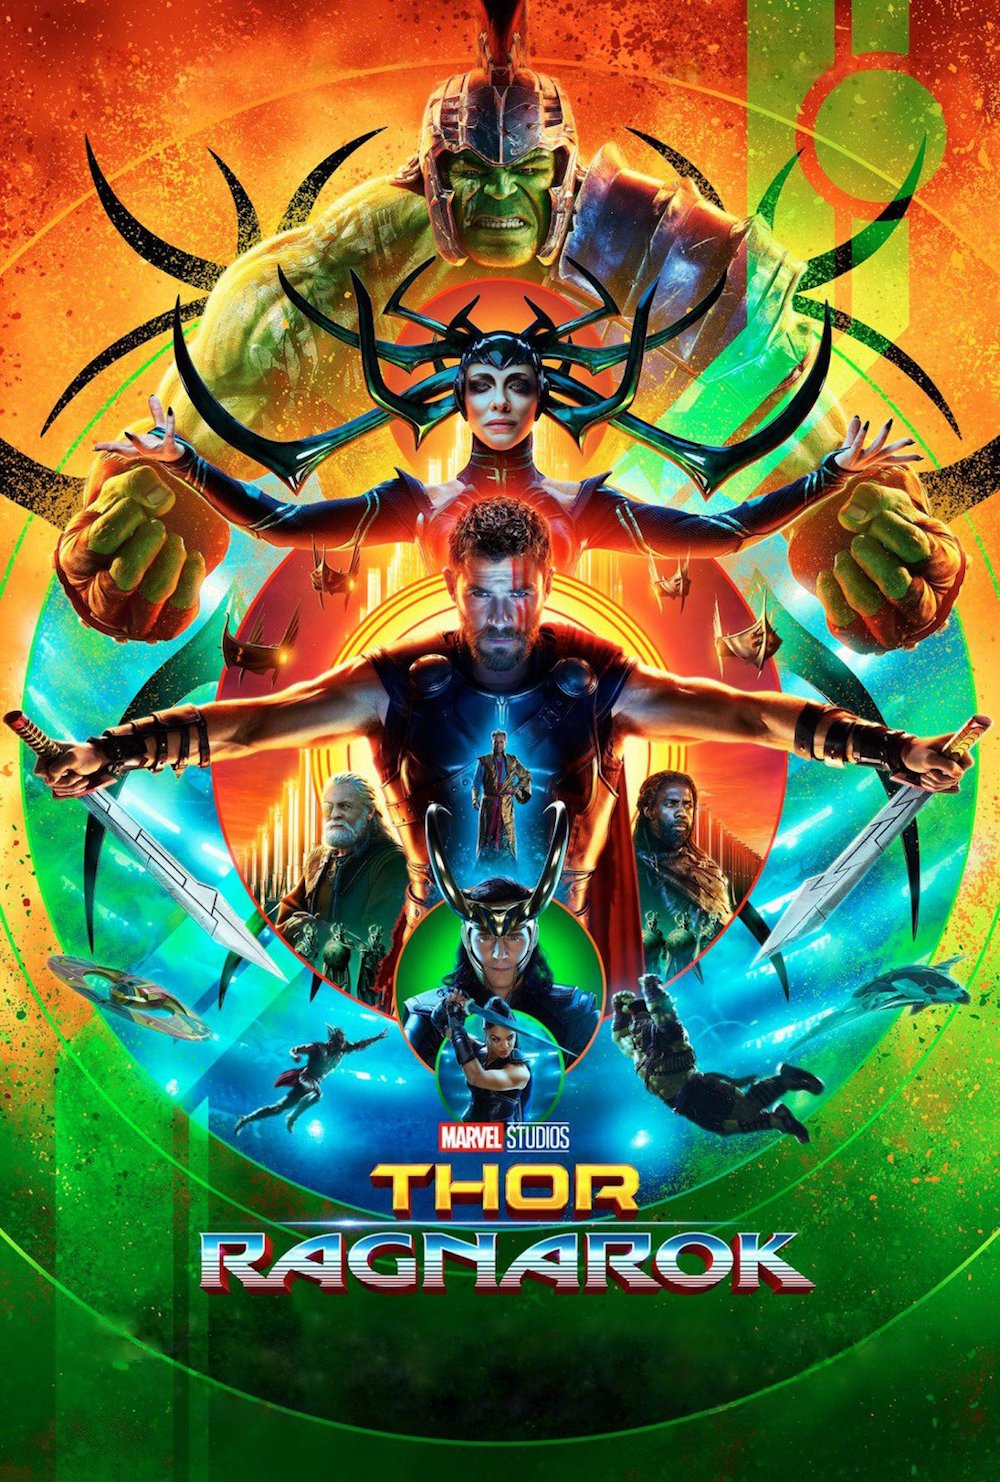 Poster for “Thor: Ragnarok”